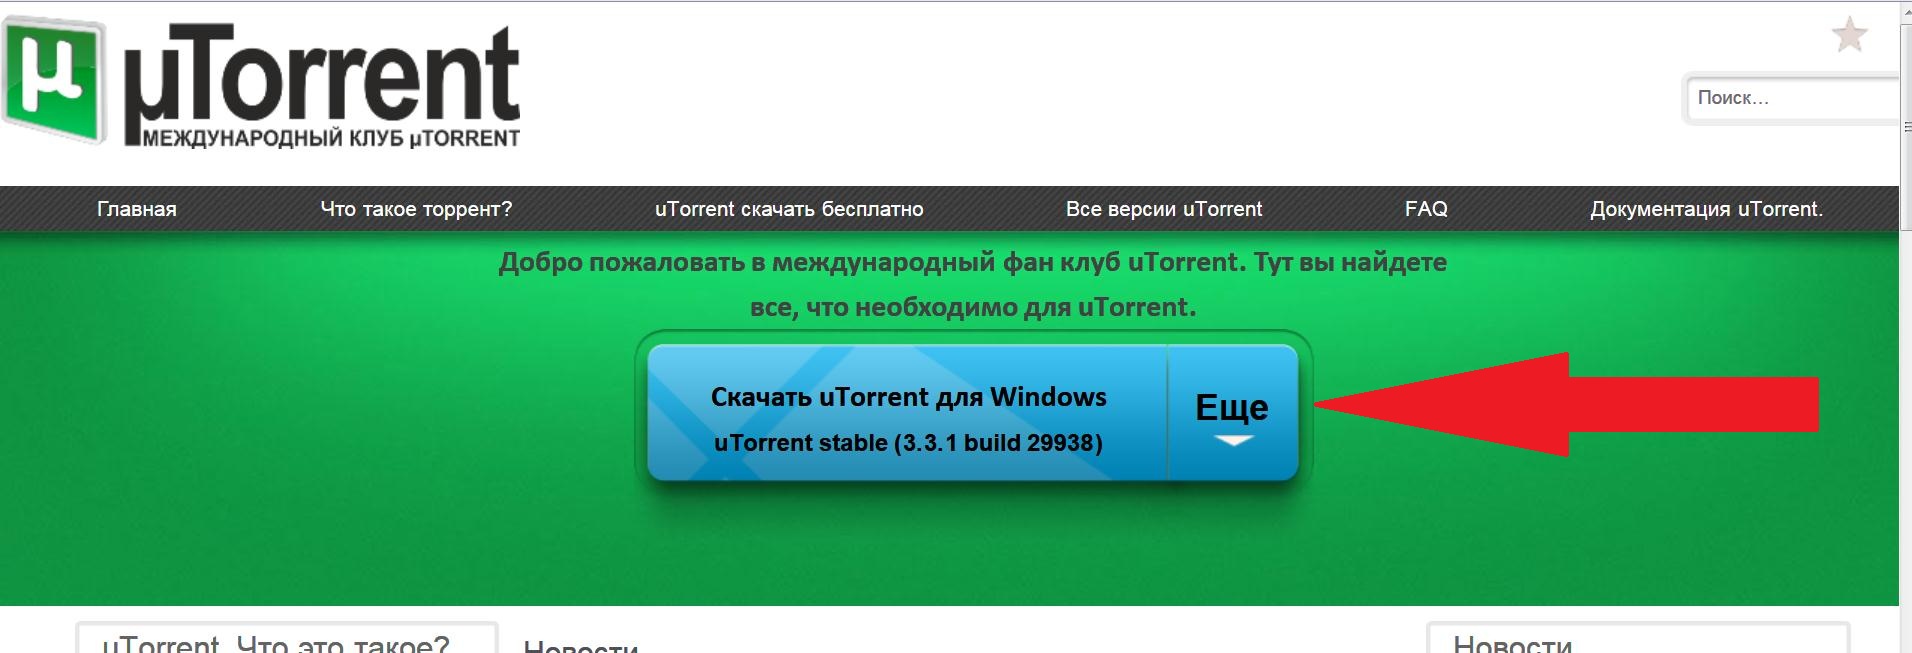 Torrent movie installer zoombrowser windows 7 x64 torrent